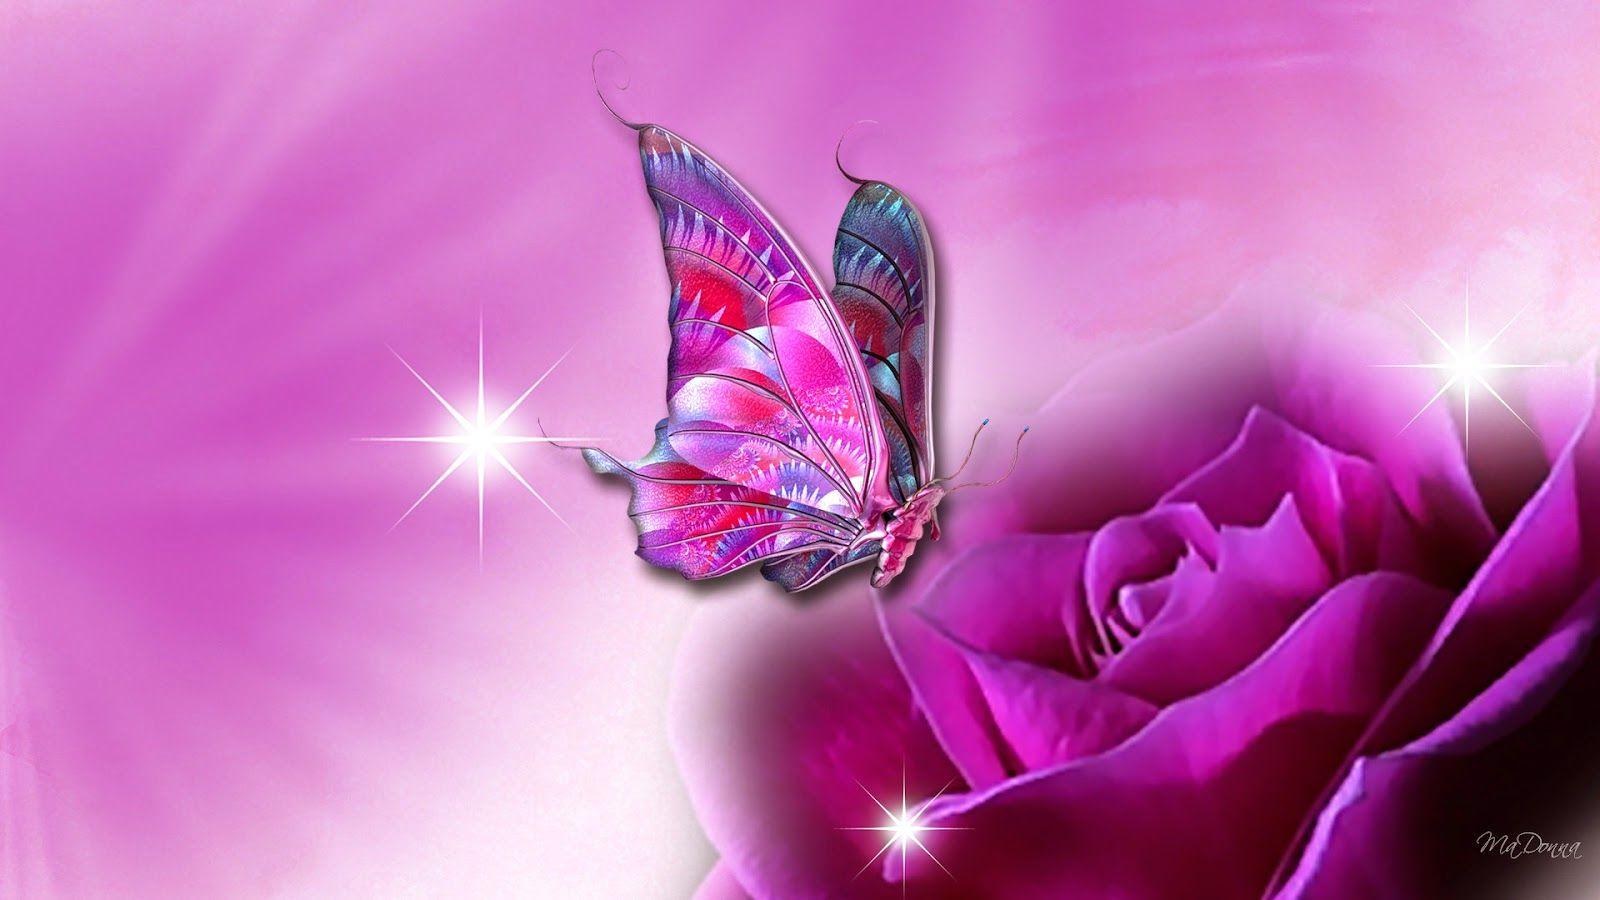 Hình nền con bướm hồng 1600x900 trên hình nền hoa màu tím - Hình nền con bướm cho máy tính xách tay - Tải xuống hình nền & hình nền HD